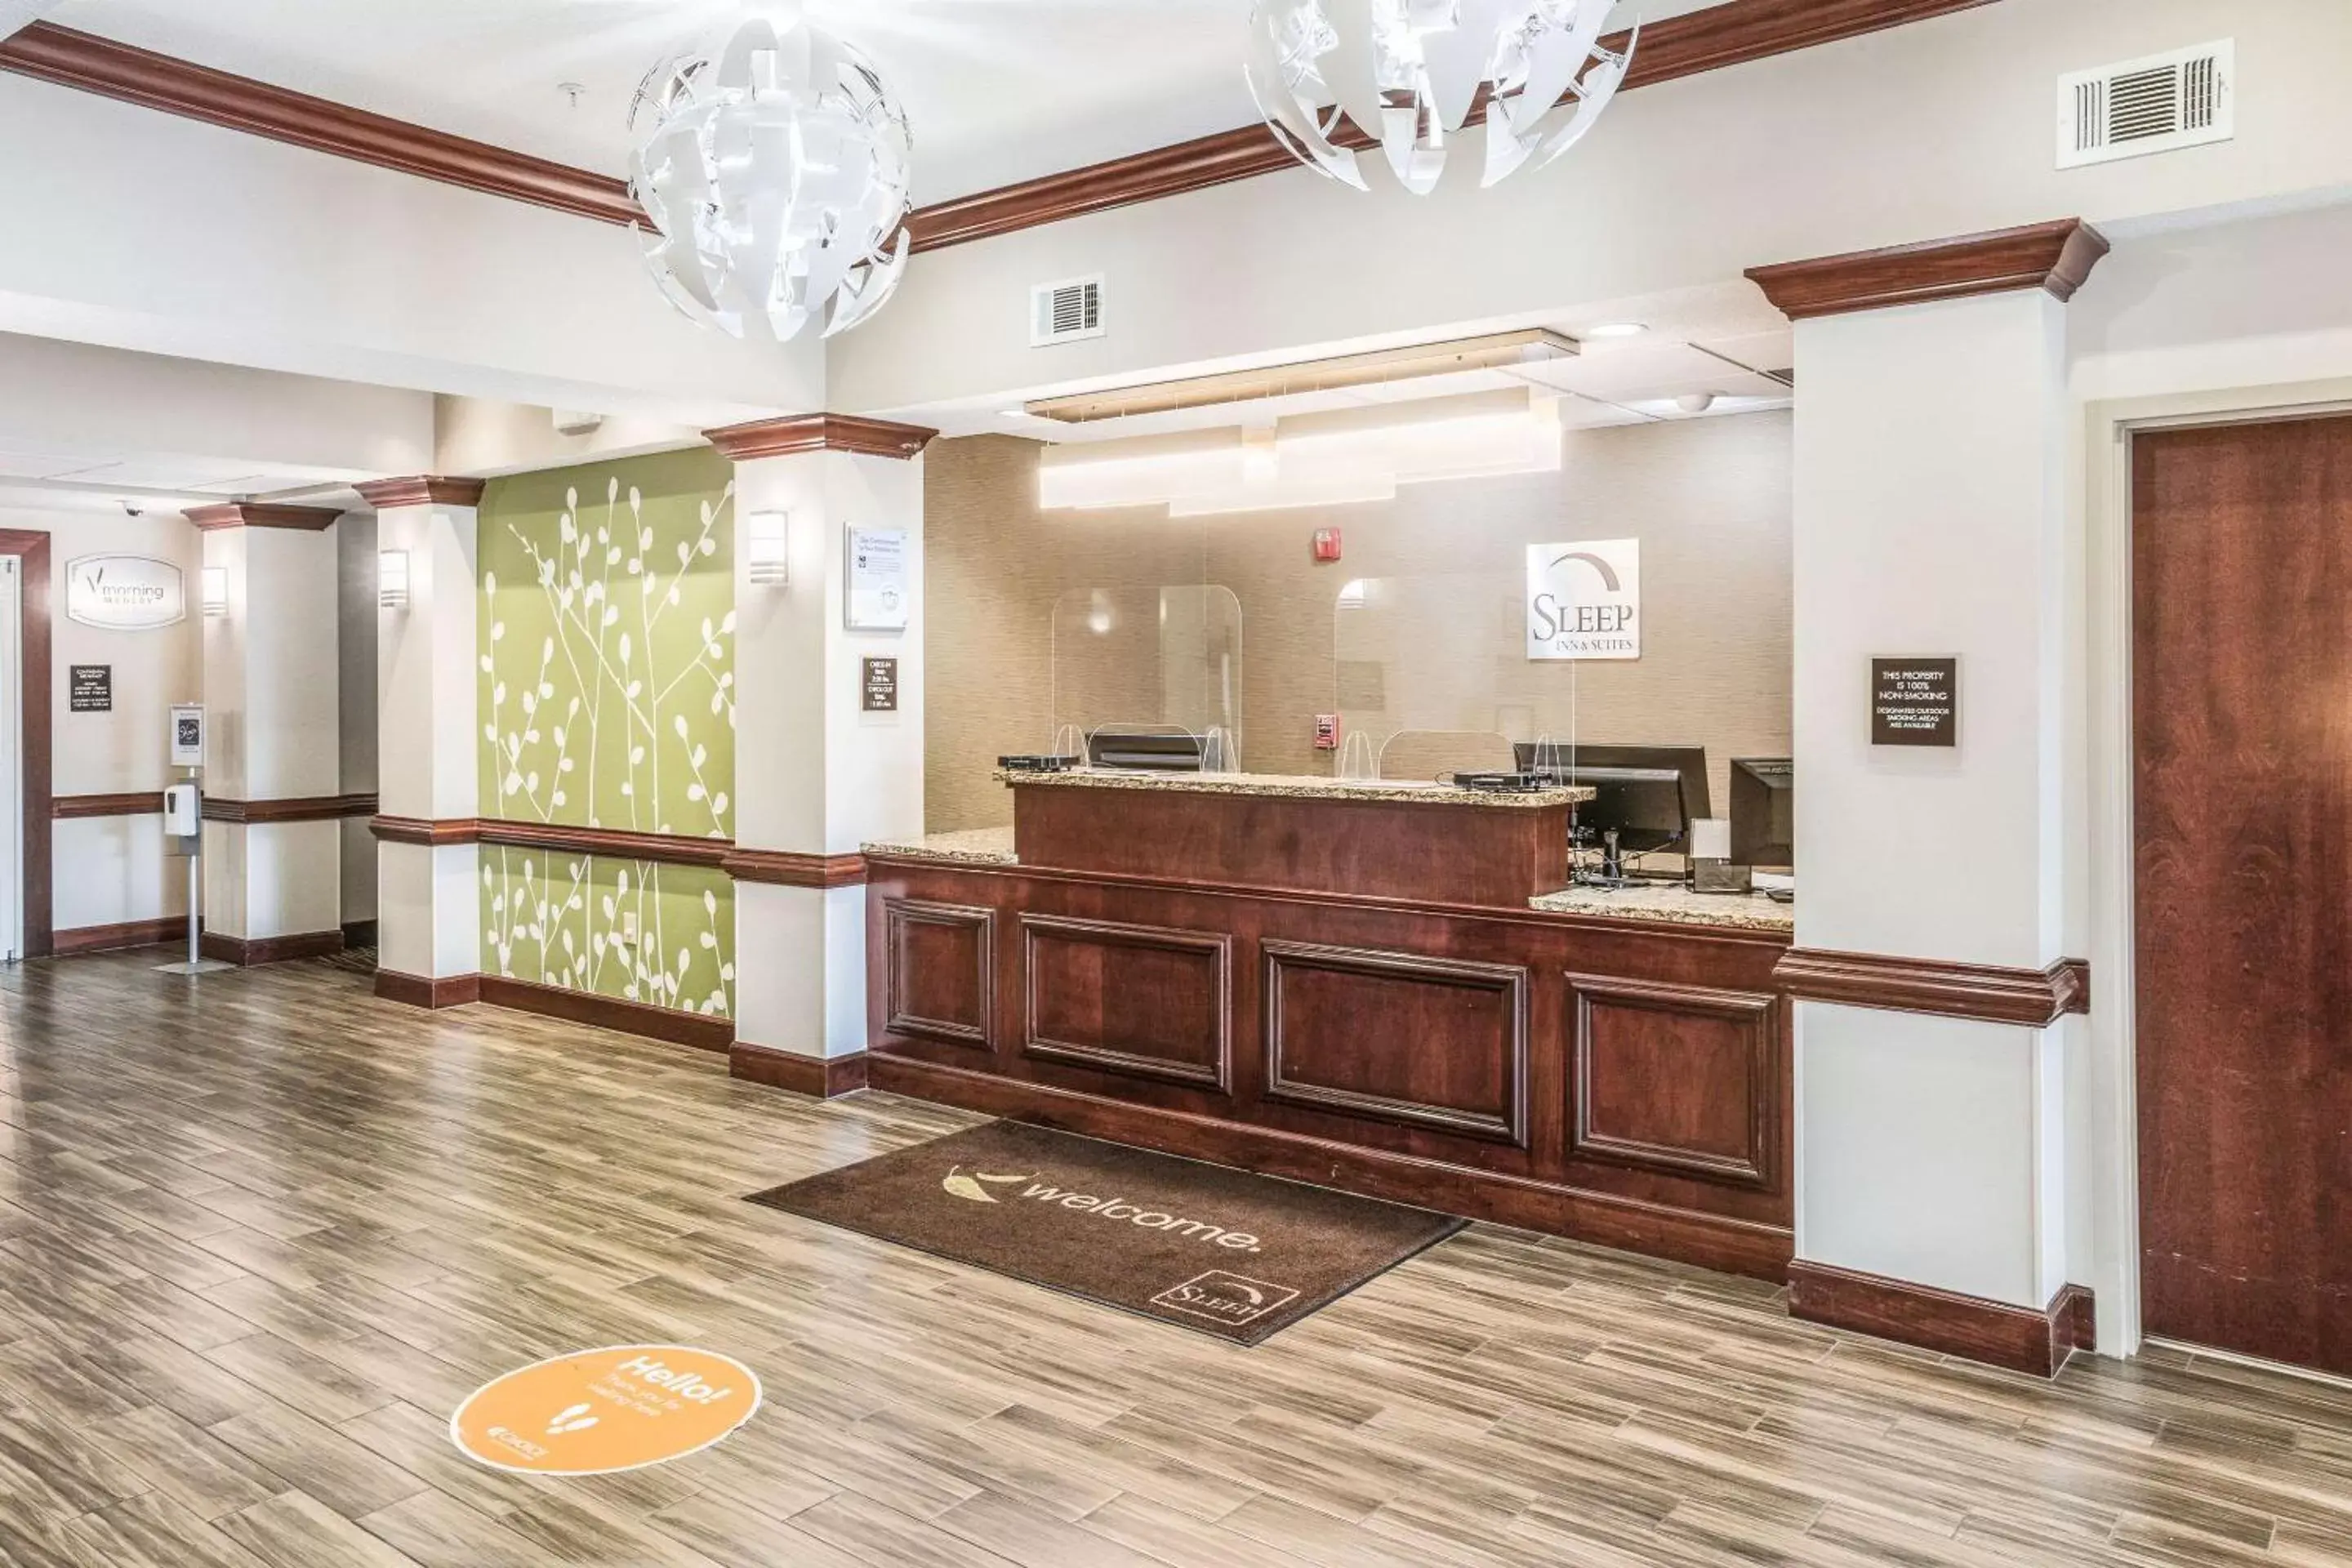 Lobby or reception, Lobby/Reception in Sleep Inn & Suites Hiram